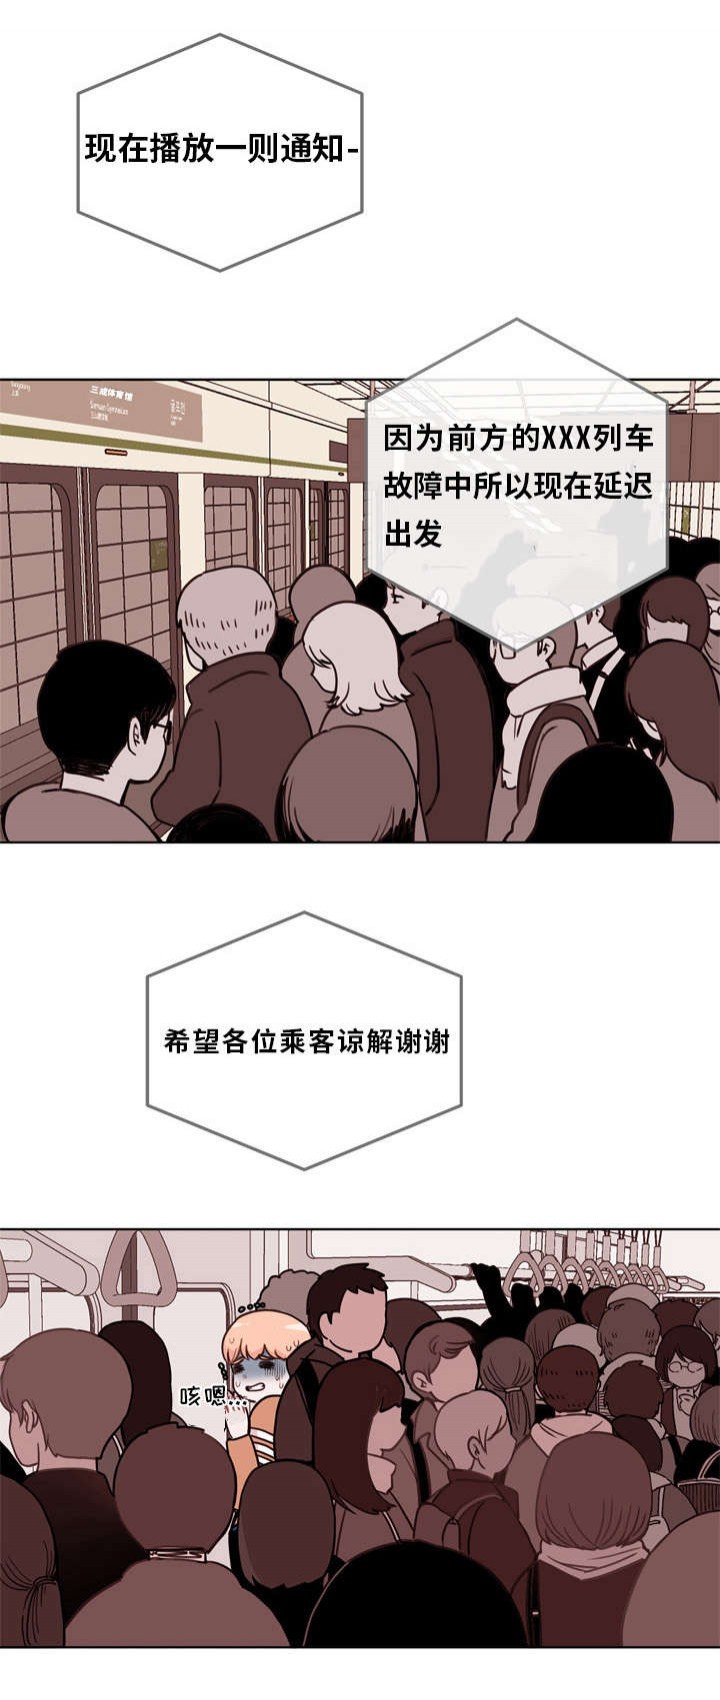 《身不由己》韩国漫画 全文中字无修版 免费在线阅读